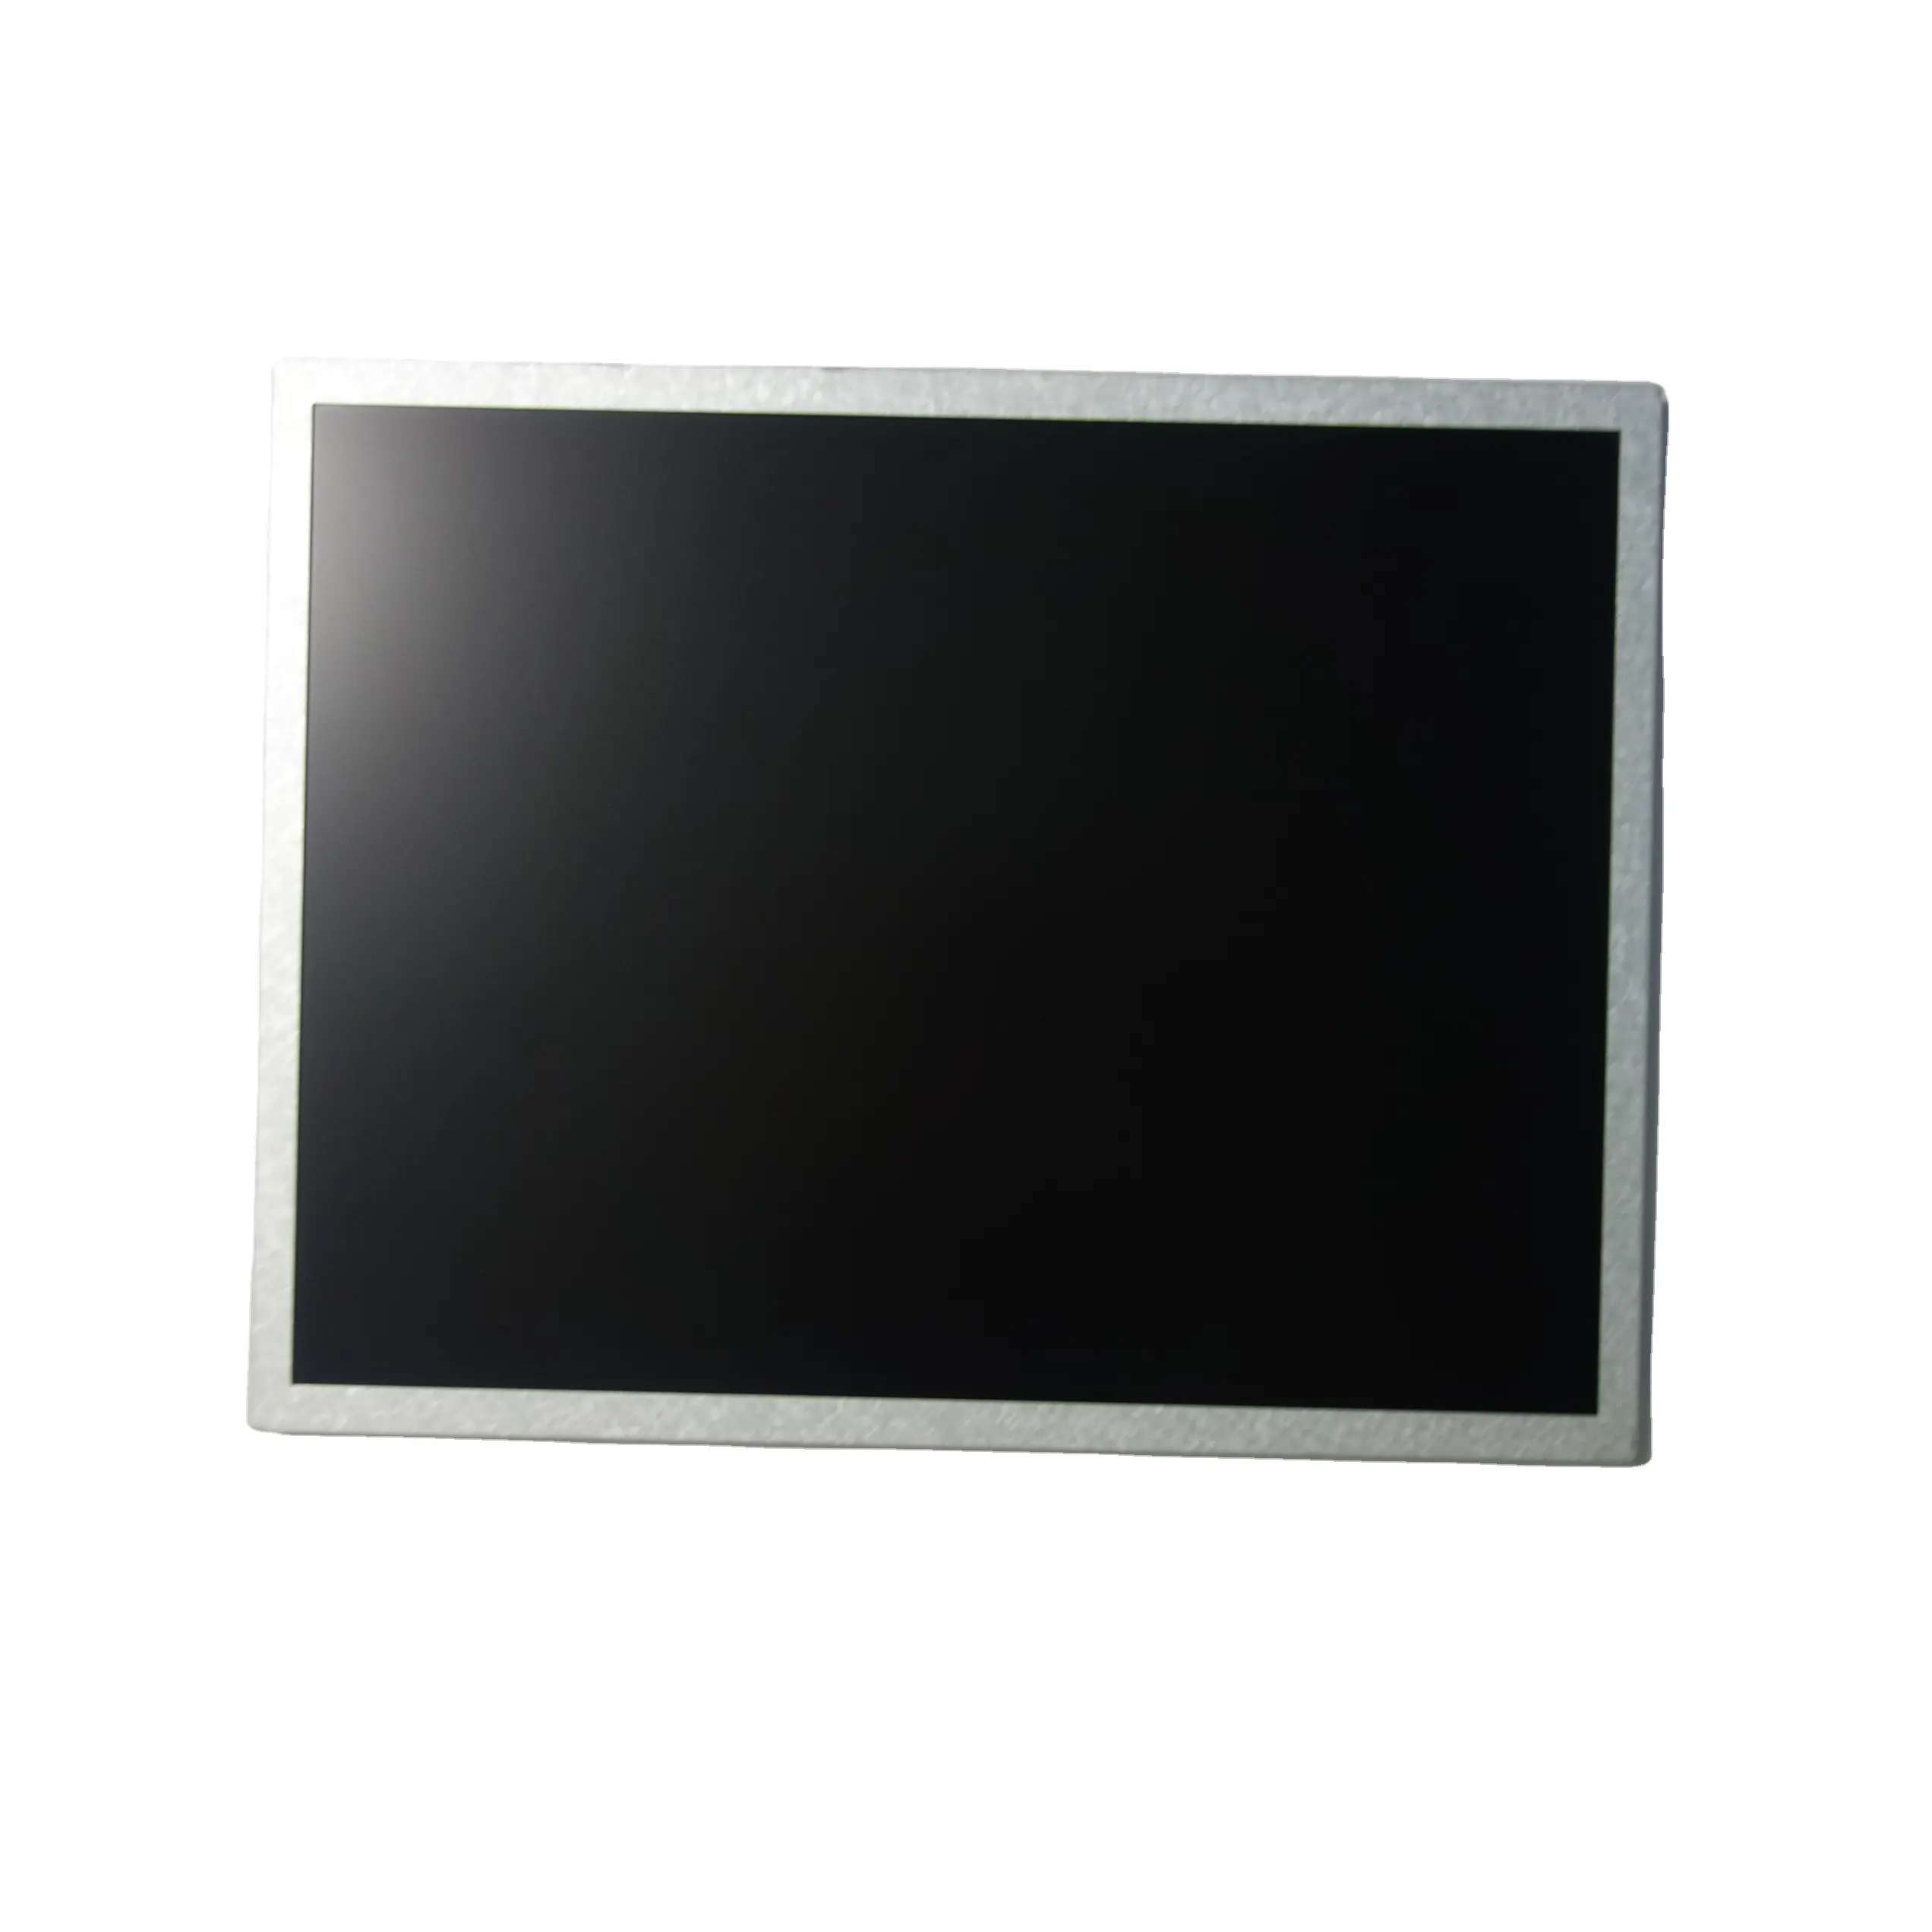 Ekran modülü 19 "1280x1024 tıbbi görüntüleme için en iyi fiyat orijinal ürün ve fabrika paket parçası R190EFE-L51